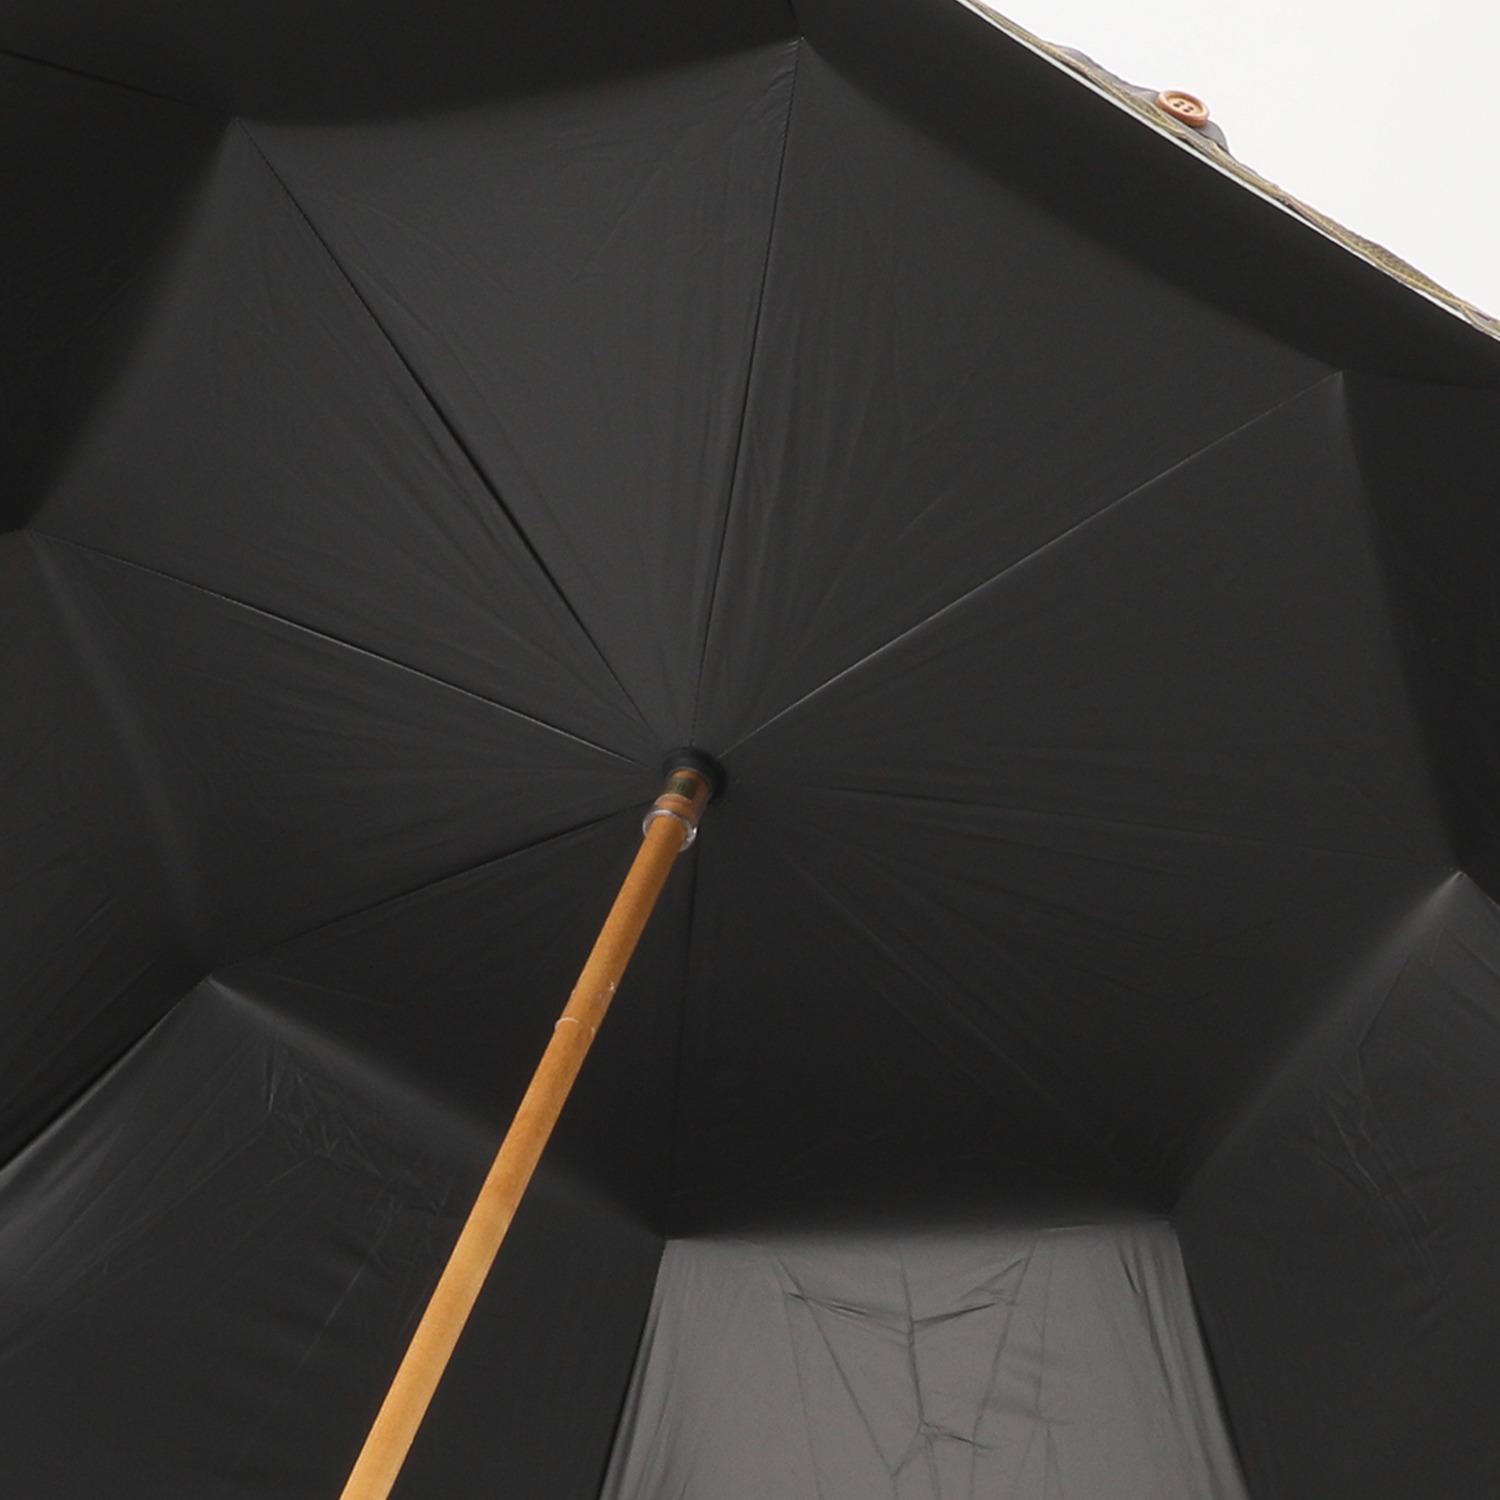 シノワズリーモダン かわず張り 刺しゅうデザイン 晴雨兼用長傘